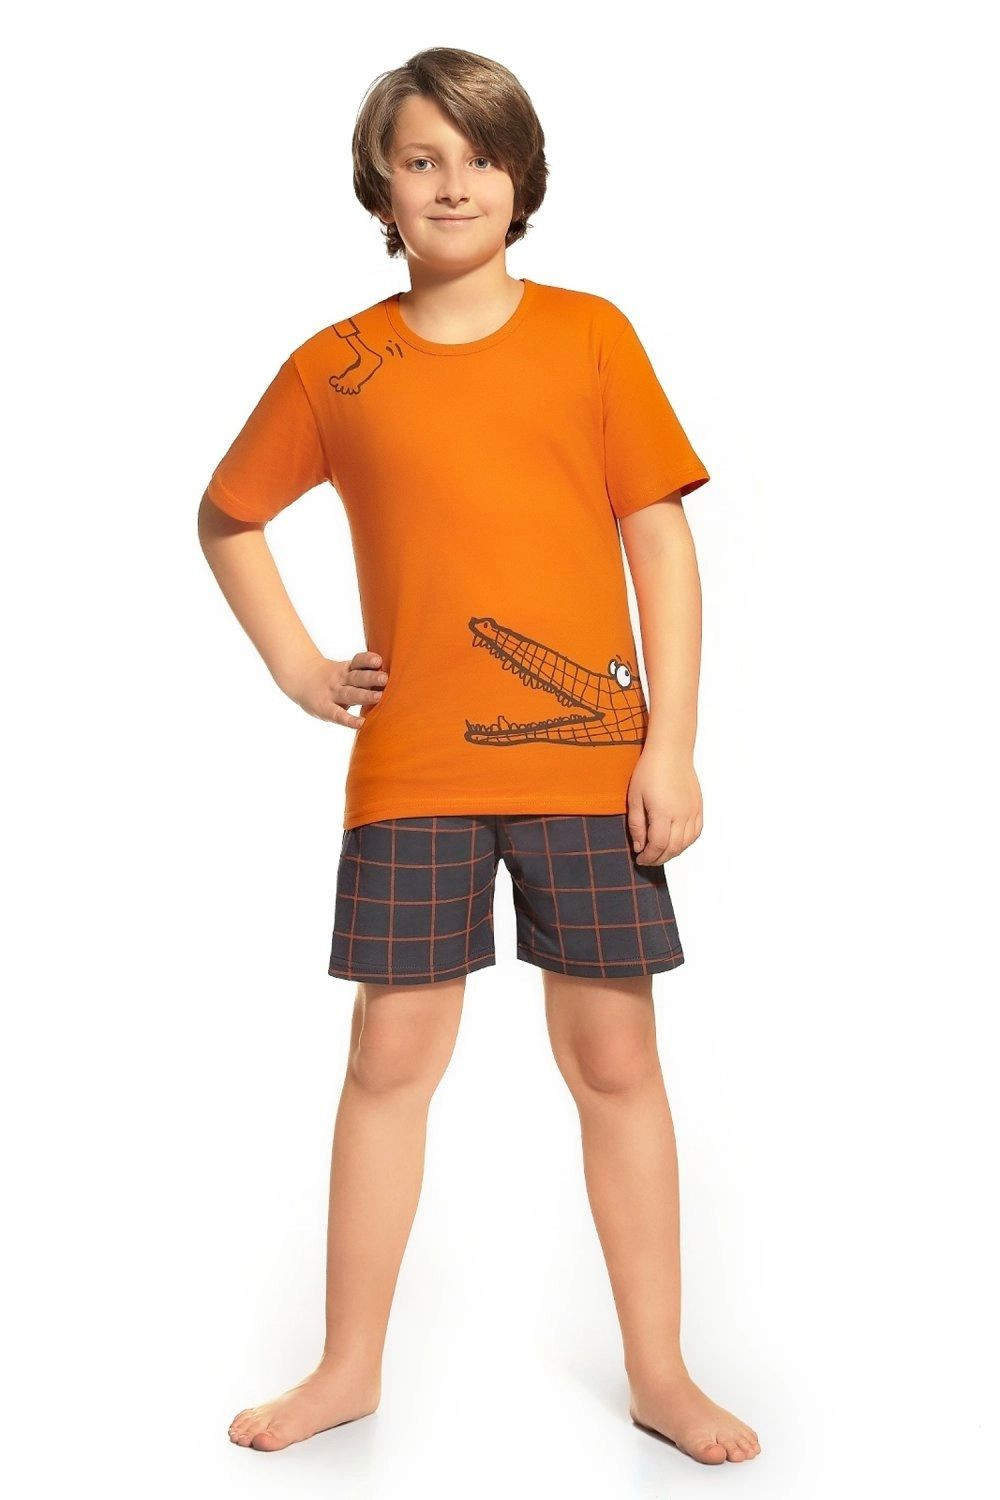 Chlapecké pyžamo 789/35 - CORNETTE oranžová